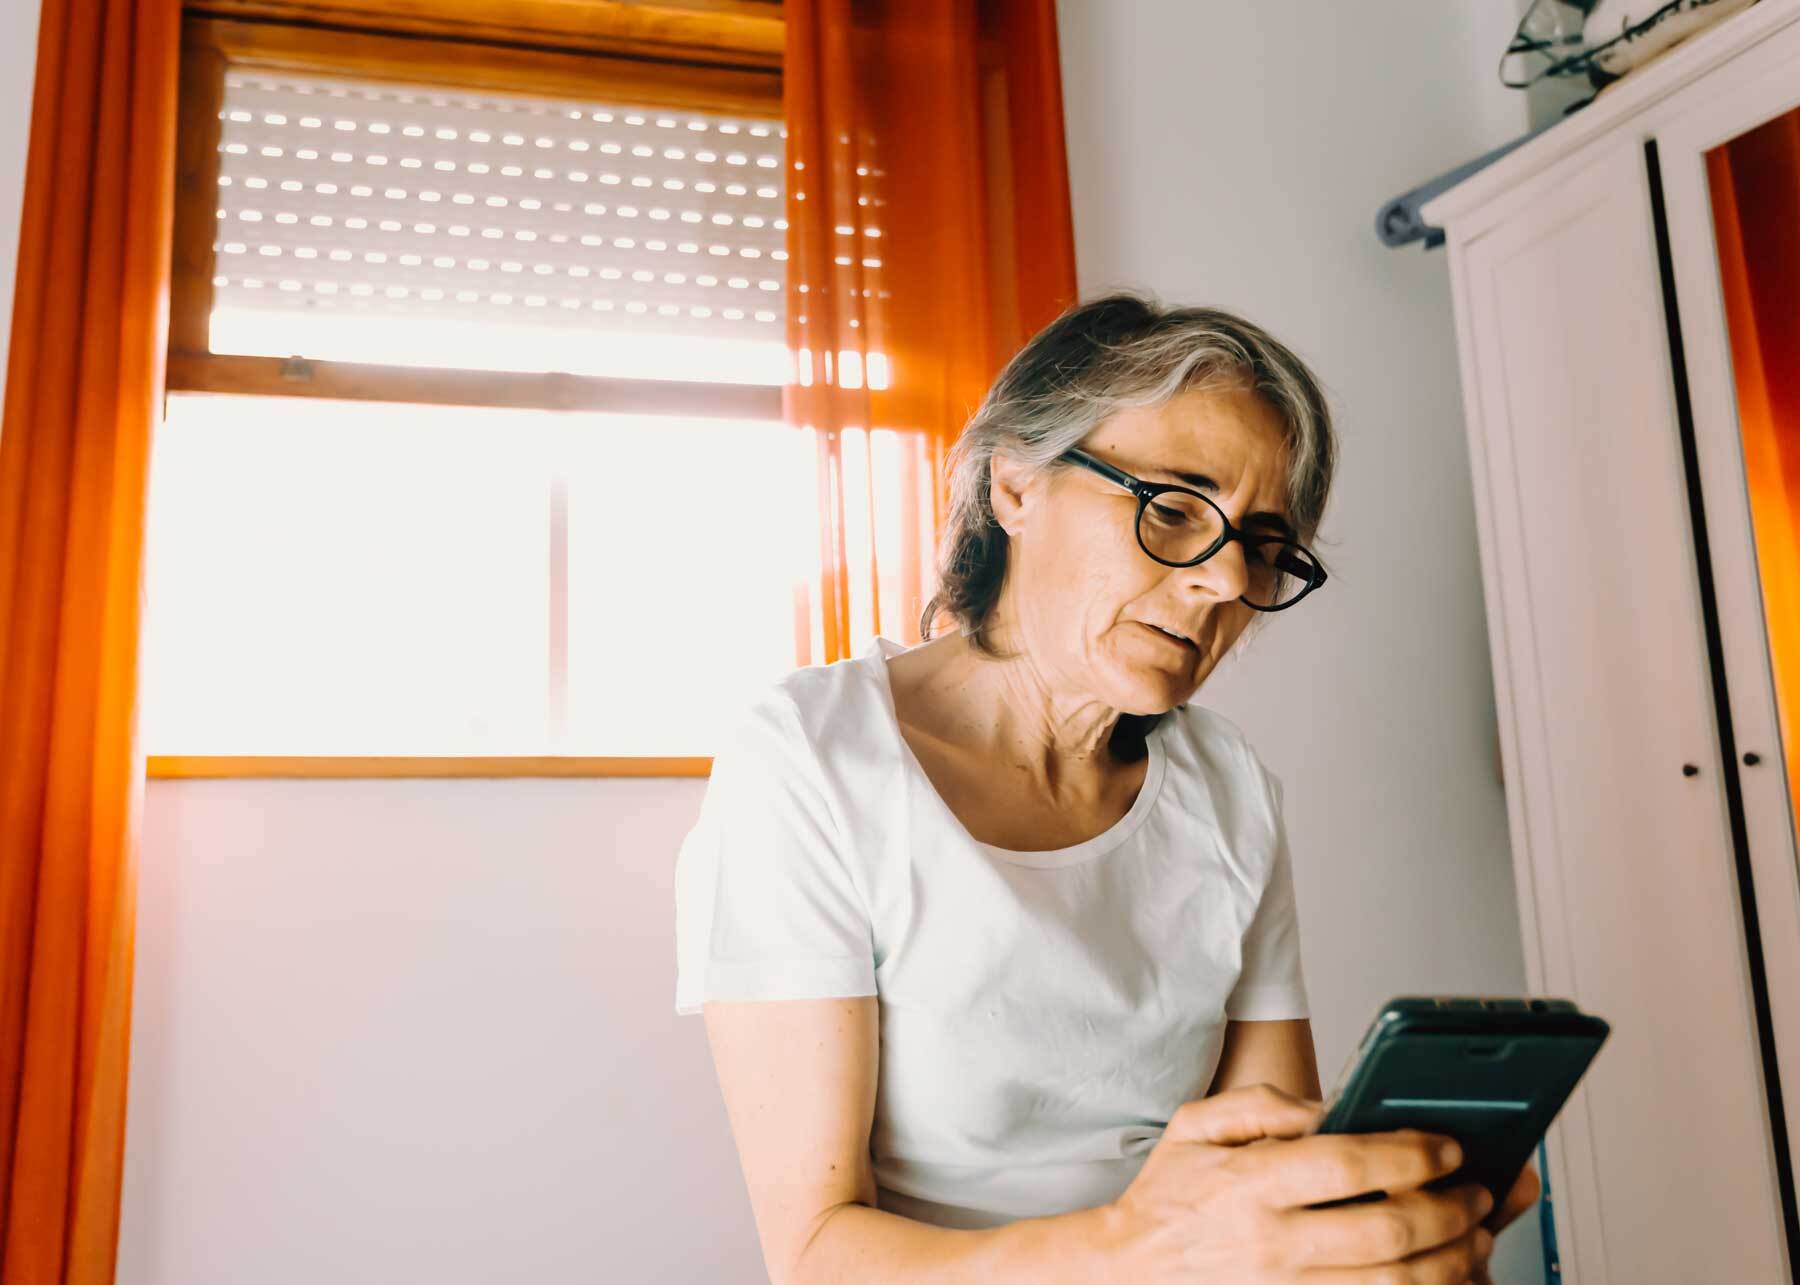 Personer som får digital oppfølging hjemme kan føle at de får mer innflytelse på helsa og at livskvaliteten øker. (Illustrasjon: Colourbox)